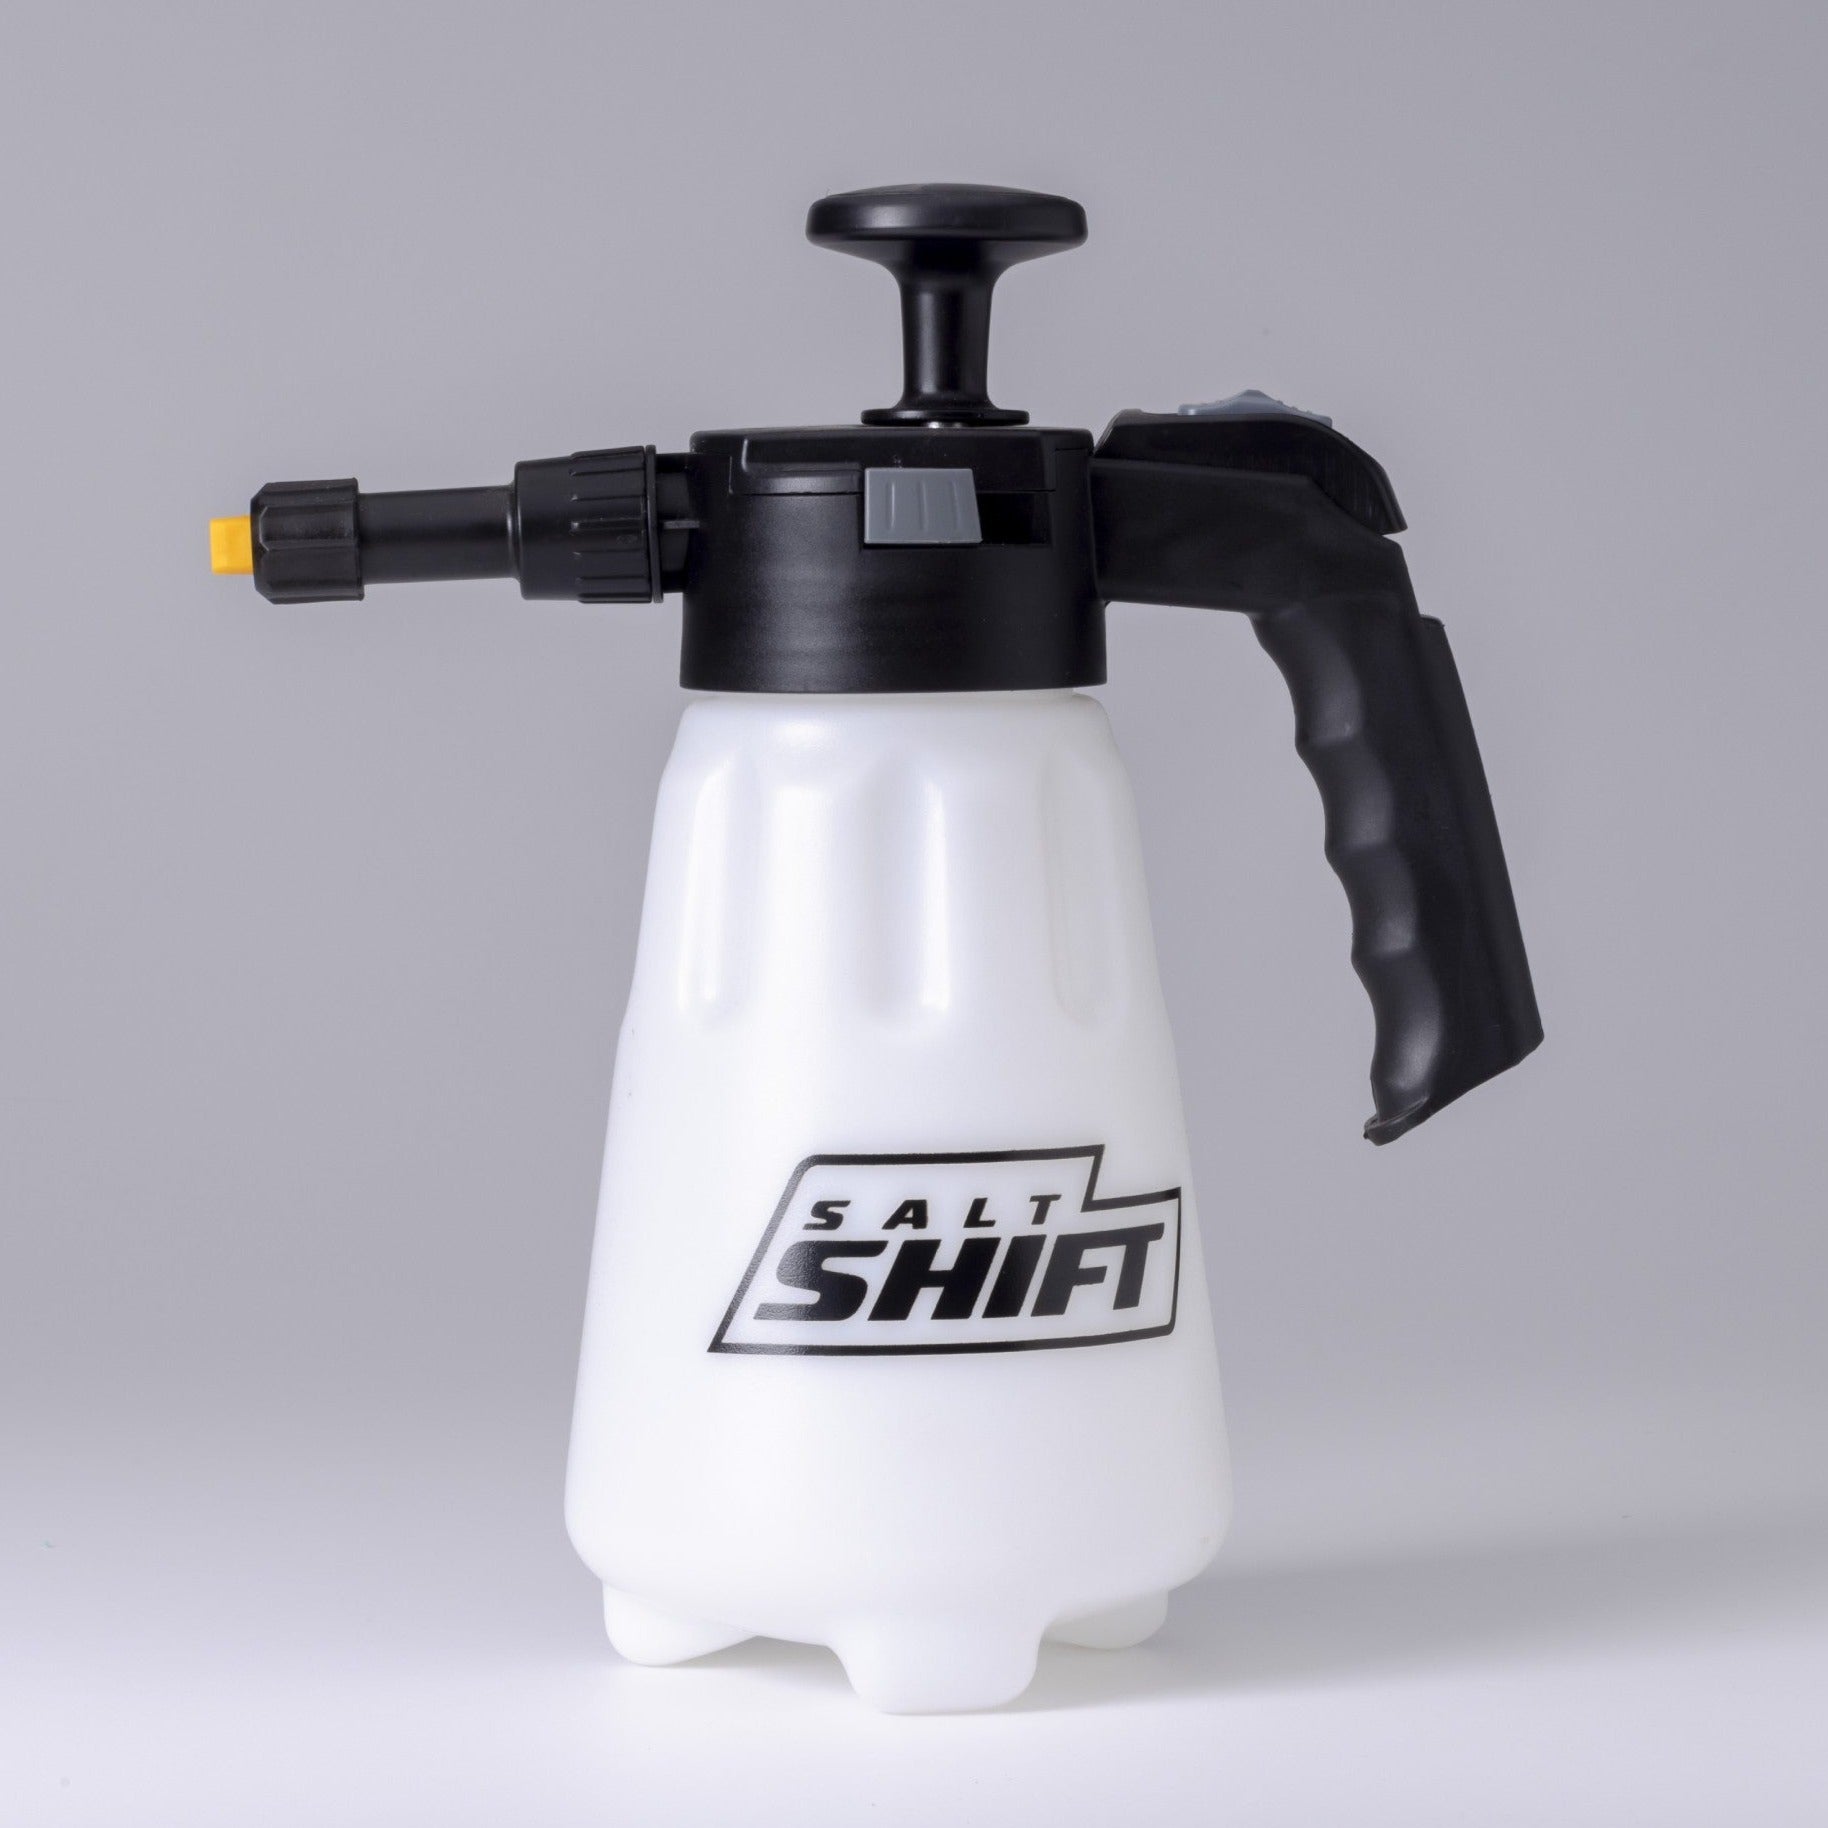 Salt Shift Pump Action Foamer